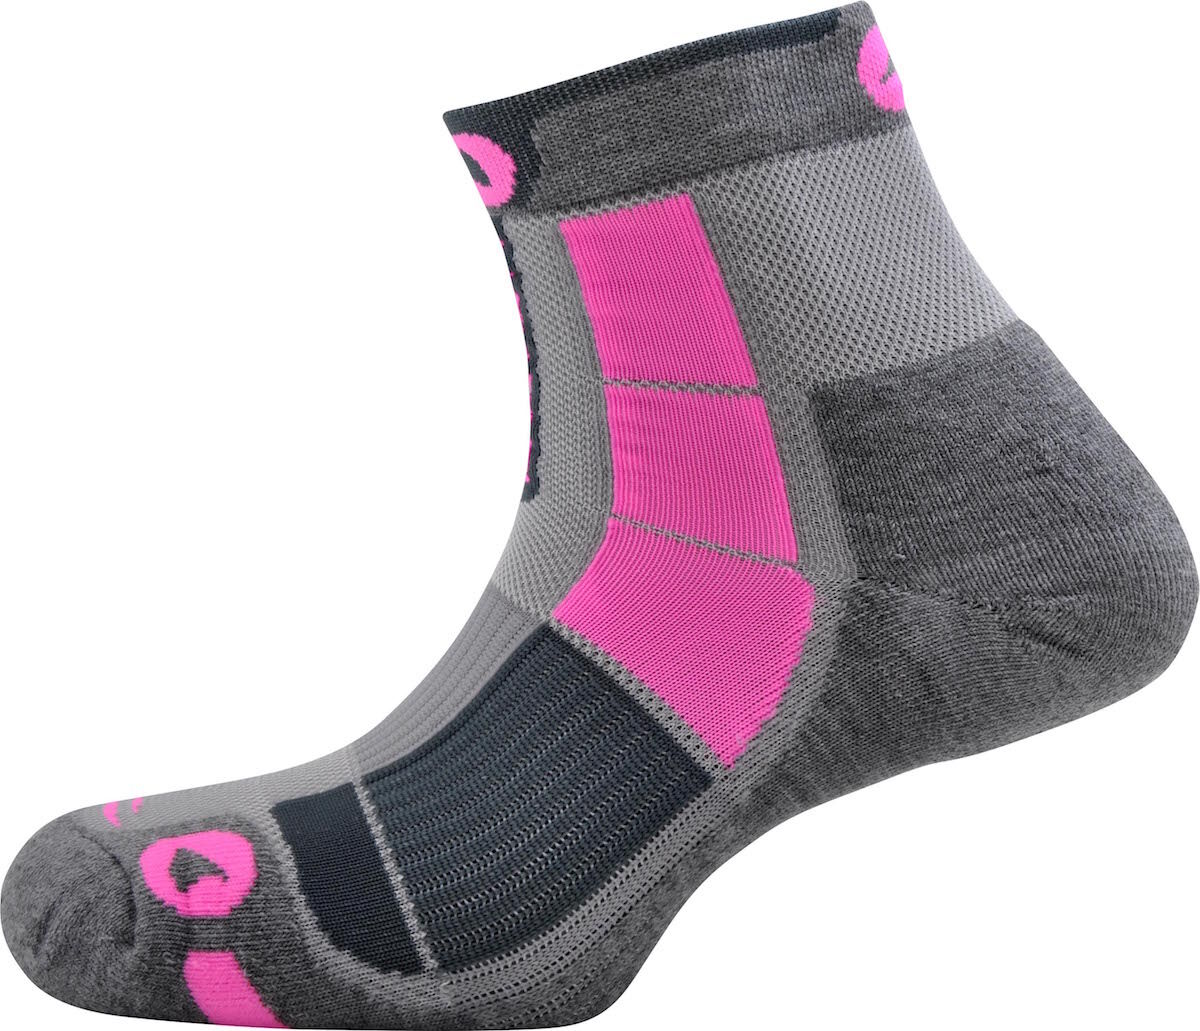 Monnet - Middle Air - Walking socks - Women's